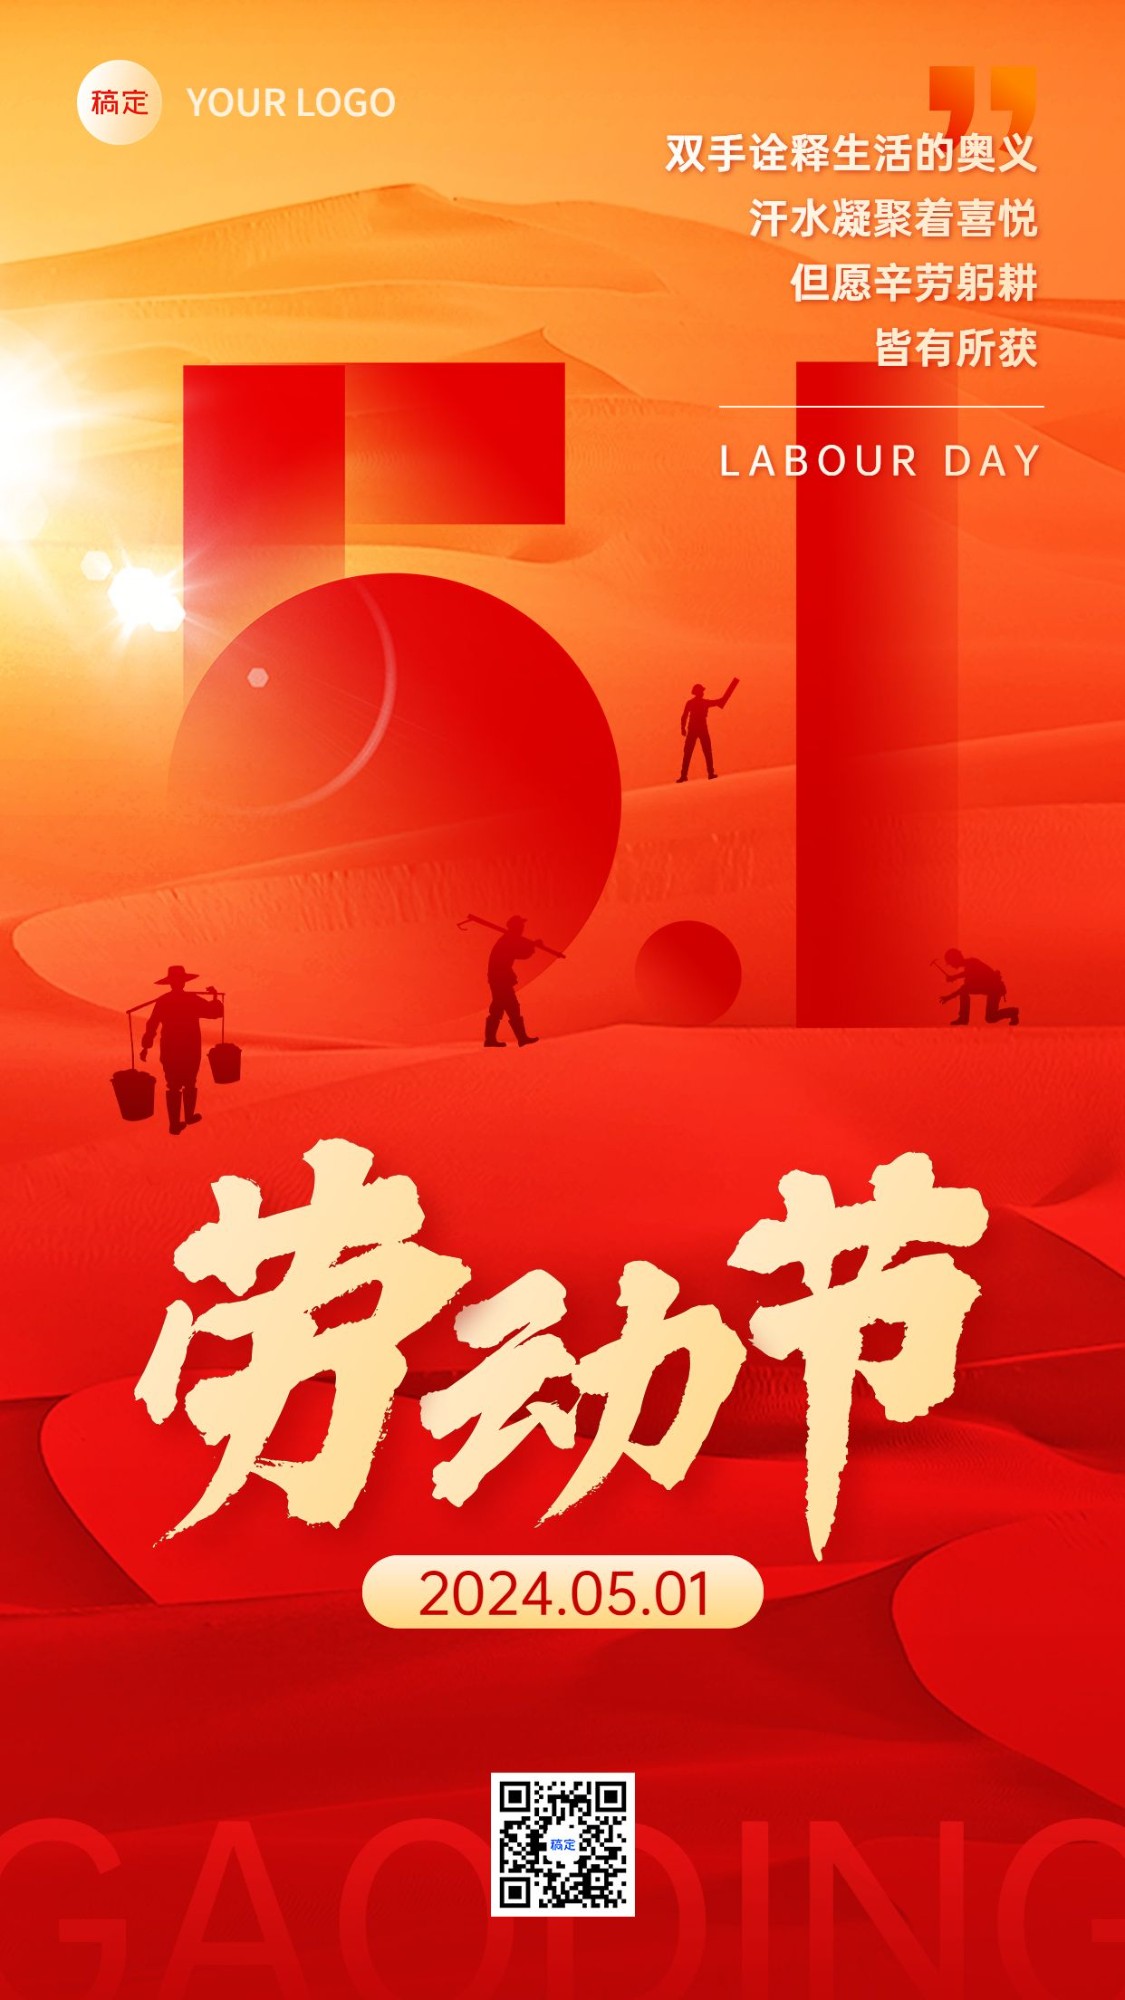 劳动节节日祝福竖版海报预览效果